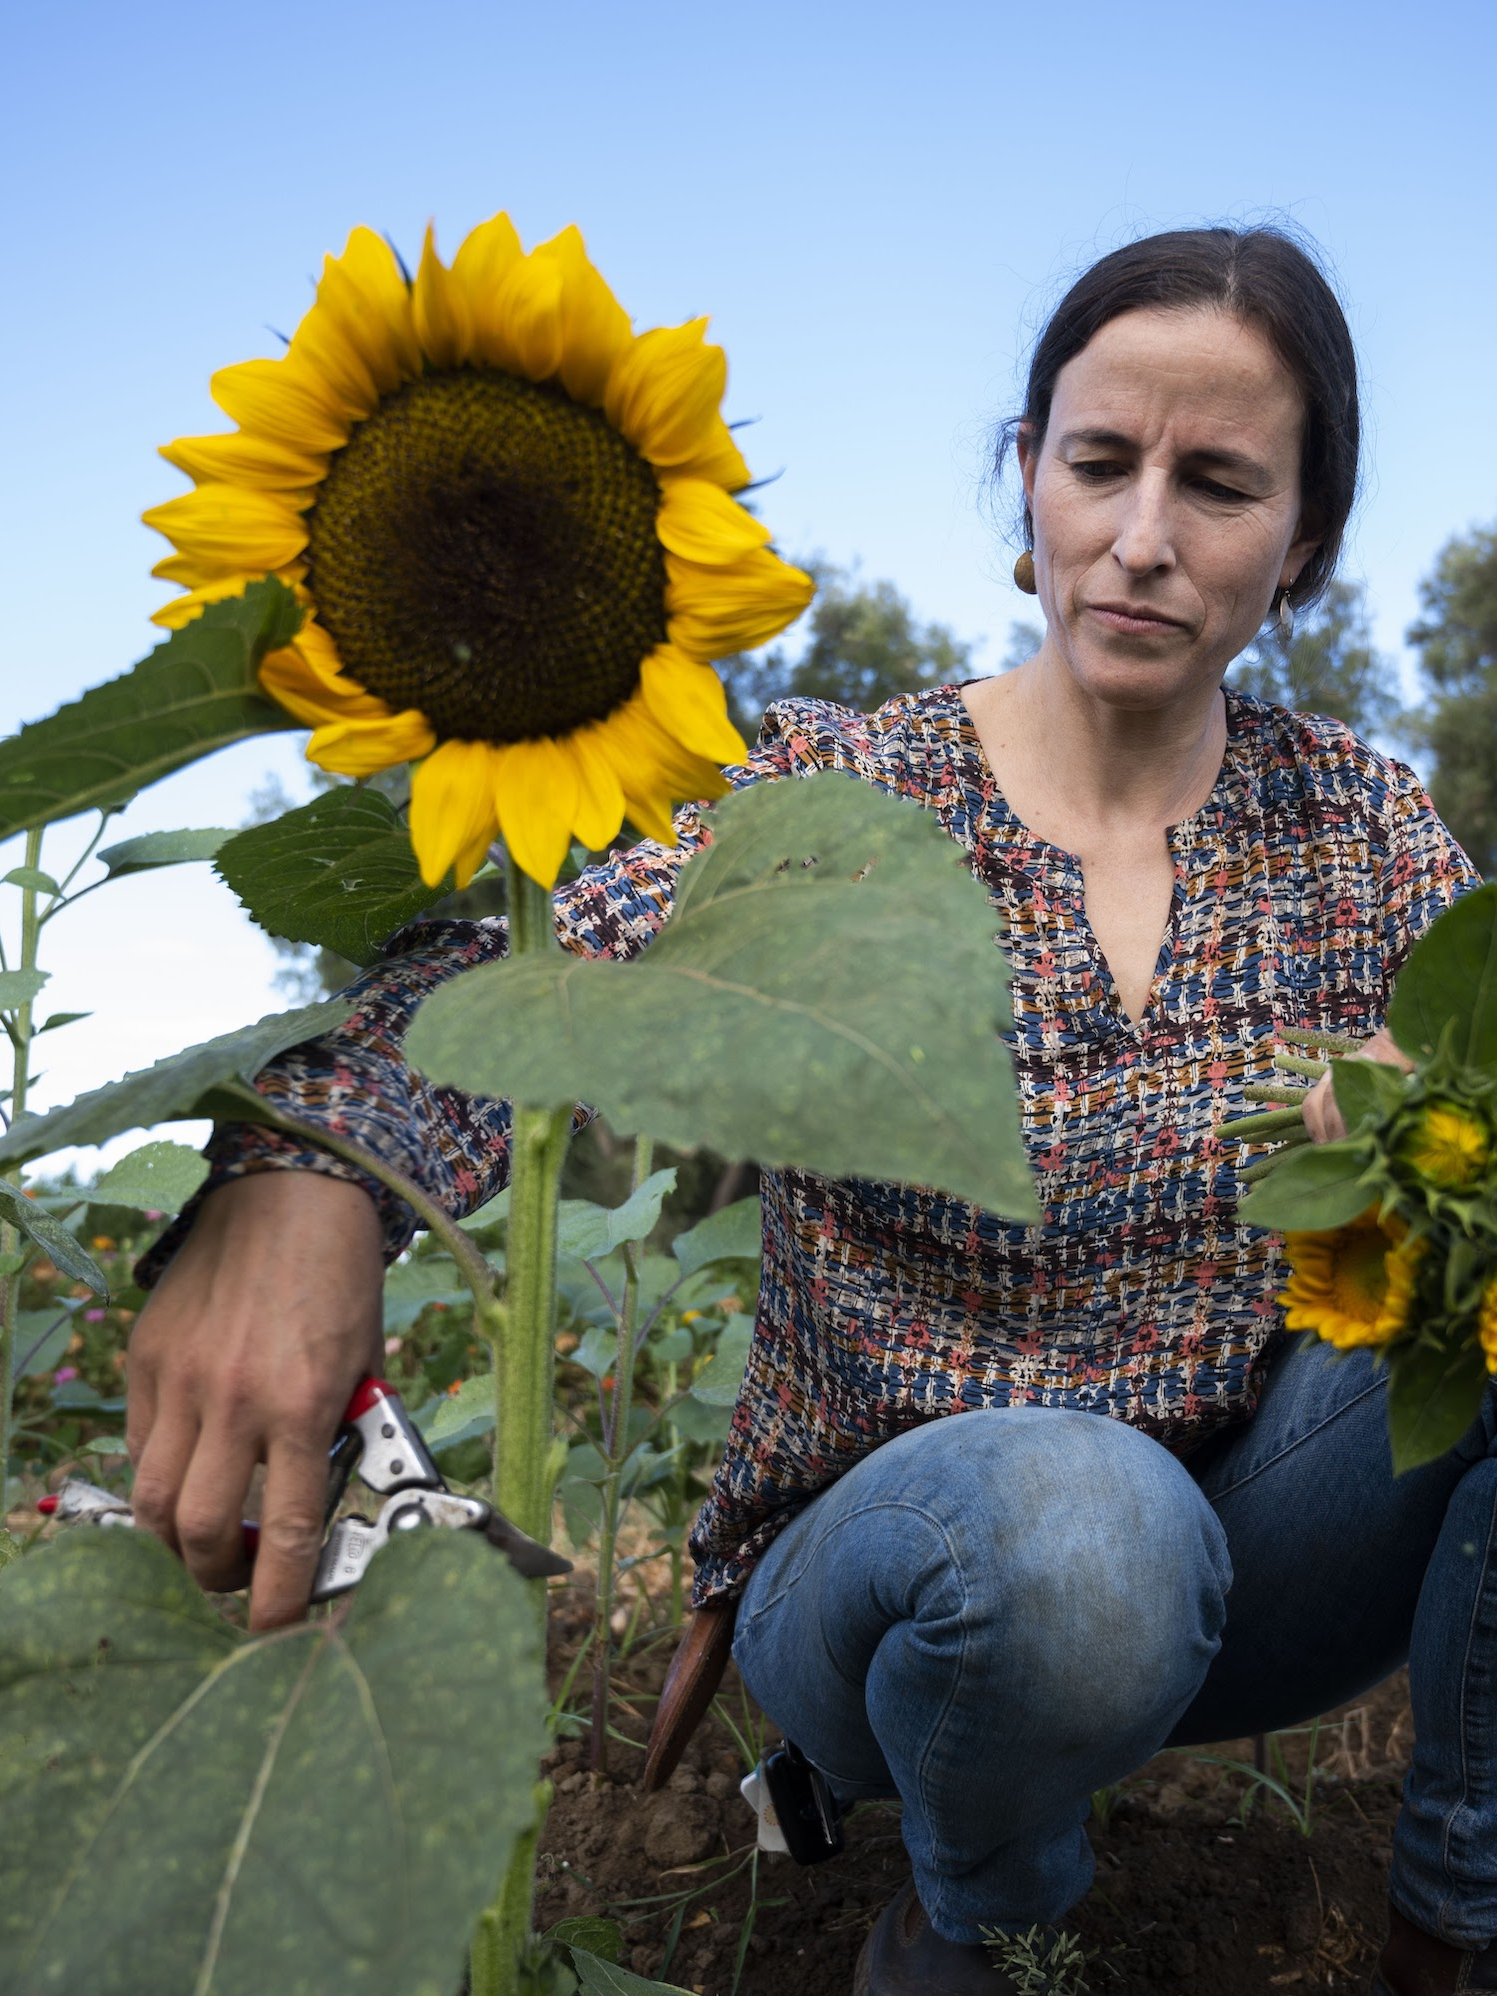 UC Davis lead gardener, Julia Schreiber, picks sunflowers in garden.